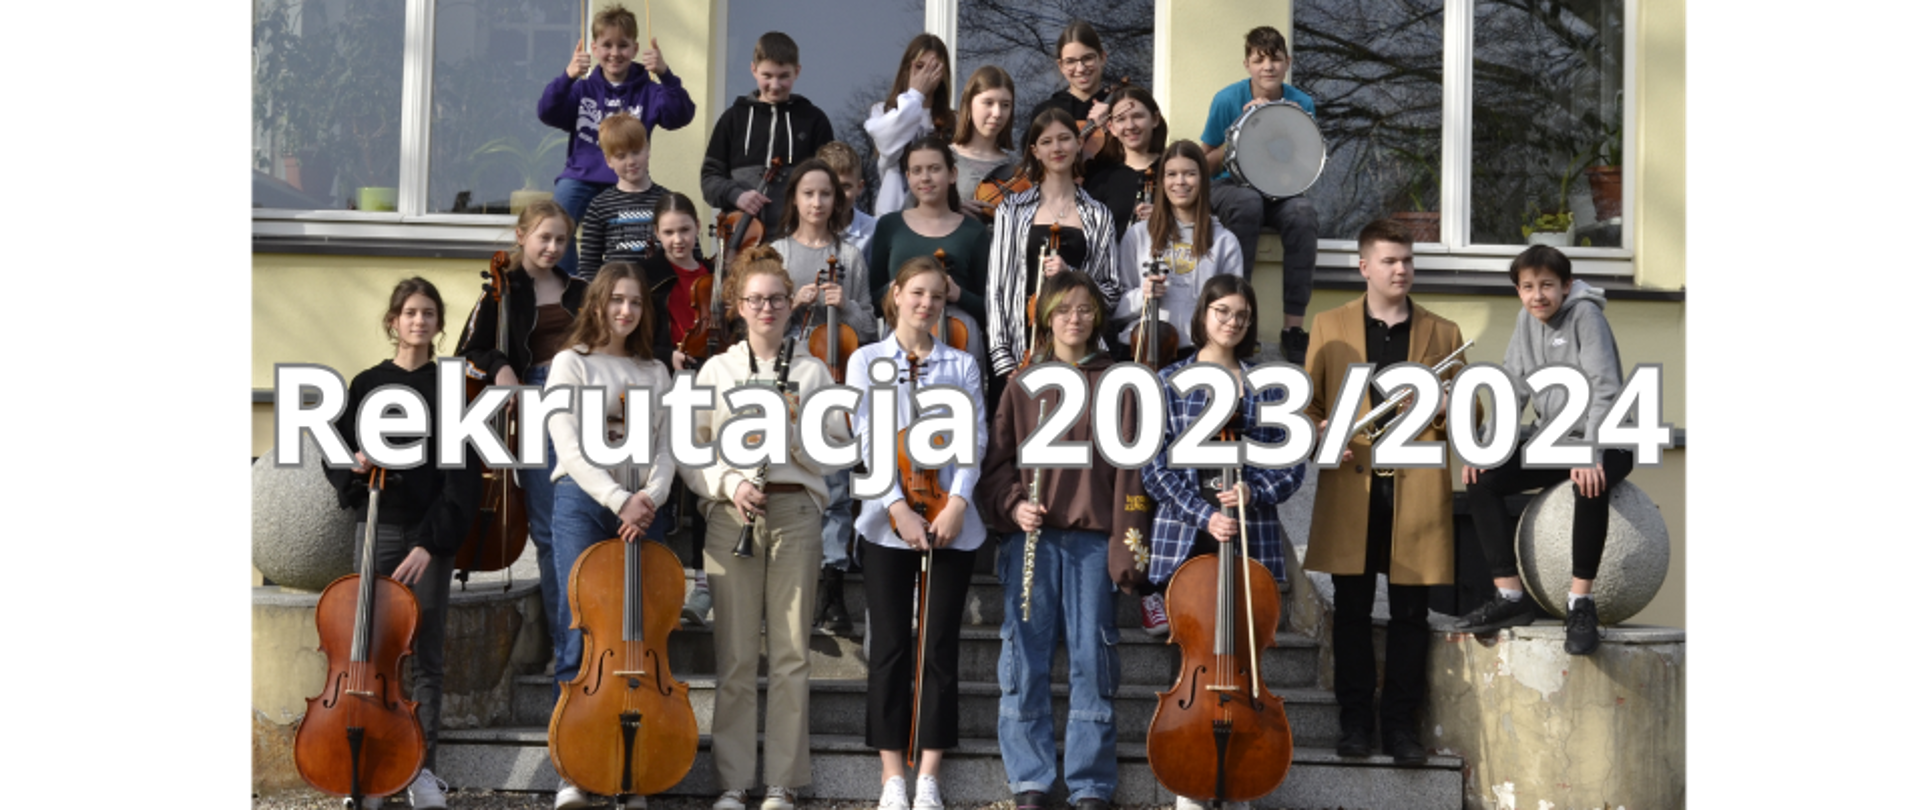 Zdjęcie kolorowe. Grupa uczniów z instrumentami na tle budynku szkoły. Na pierwszym planie biały napis o treści "Rekrutacja 2023/2024" .